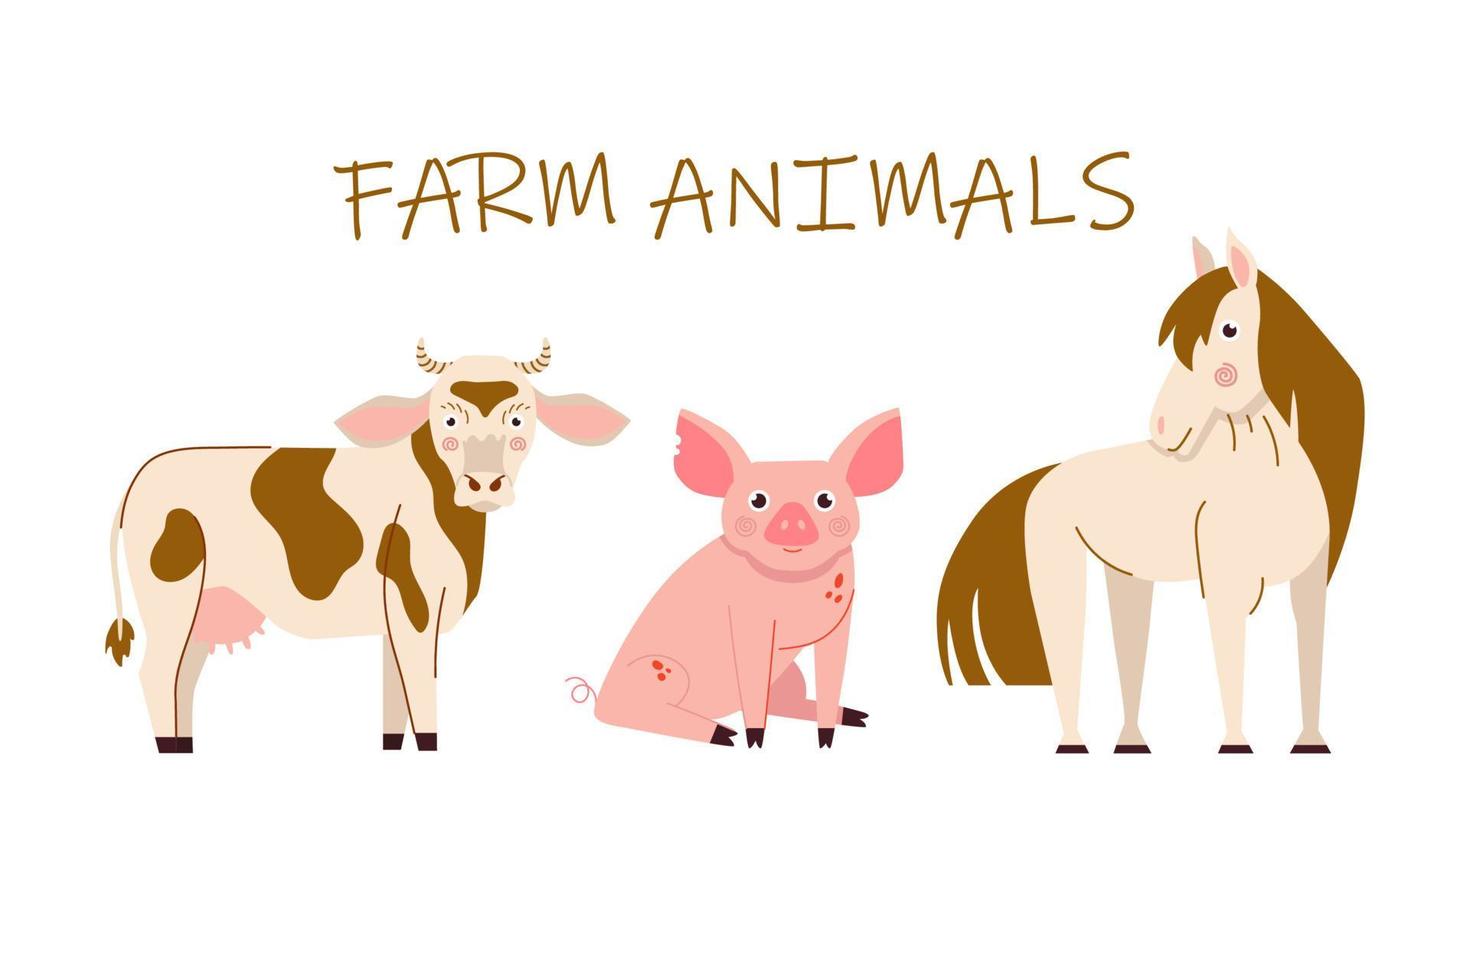 ilustrações vetoriais de vaca, porco e cavalo. conjunto de animais de fazenda dos desenhos animados, isolados no fundo branco. vetor